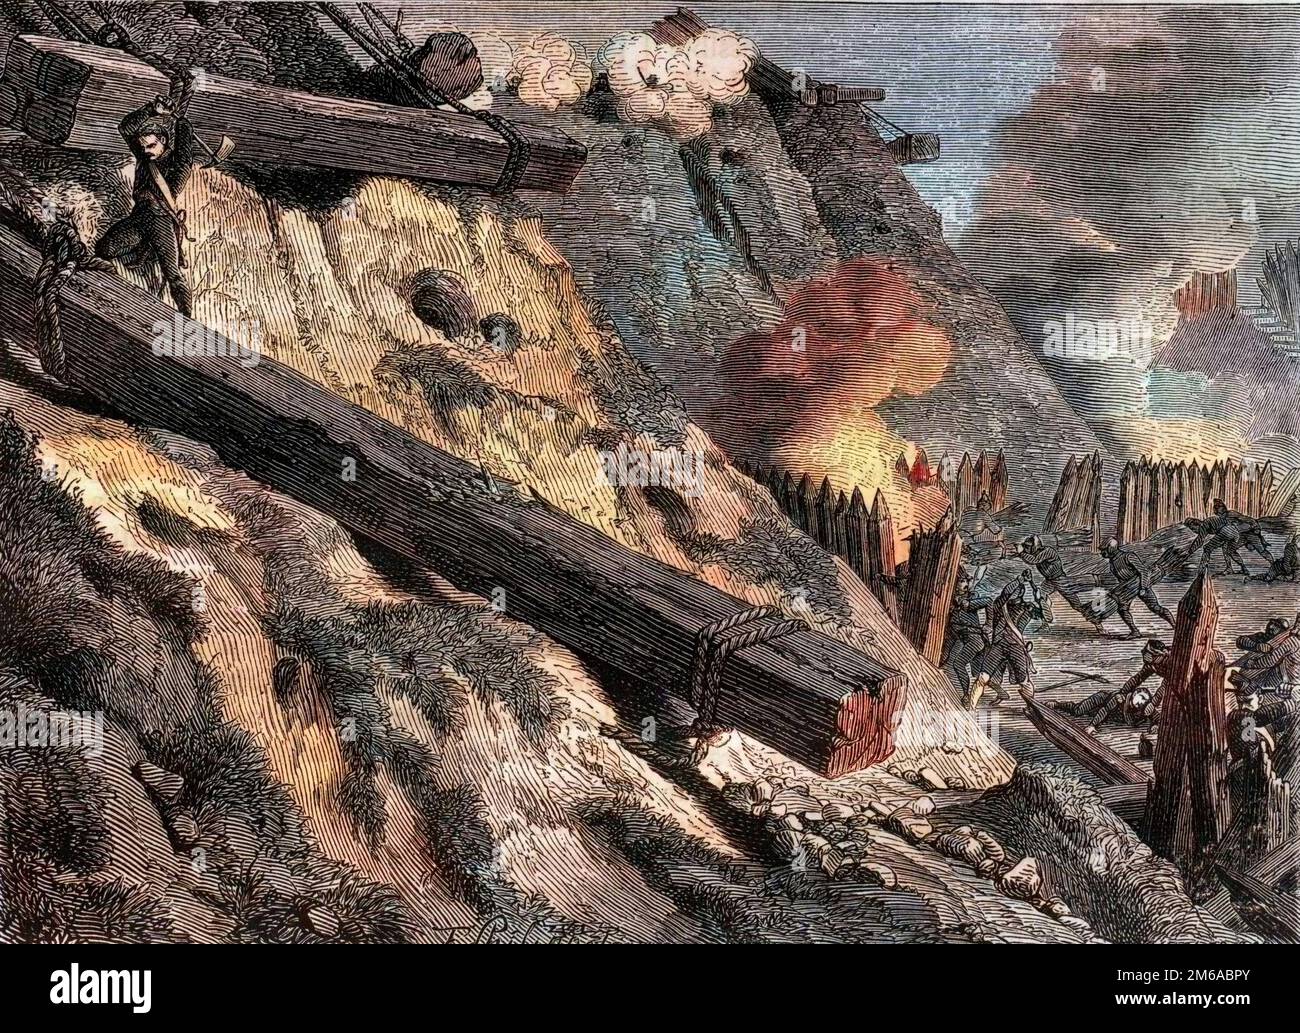 Le siege de Dantzig (actuelle Gdansk) le 19 mars 1807 pendant la guerre de la quatrieme coalition - Acte d'heroisme du chasseur Francois Valle durant le siege de Dantzig -1879 Stock Photo